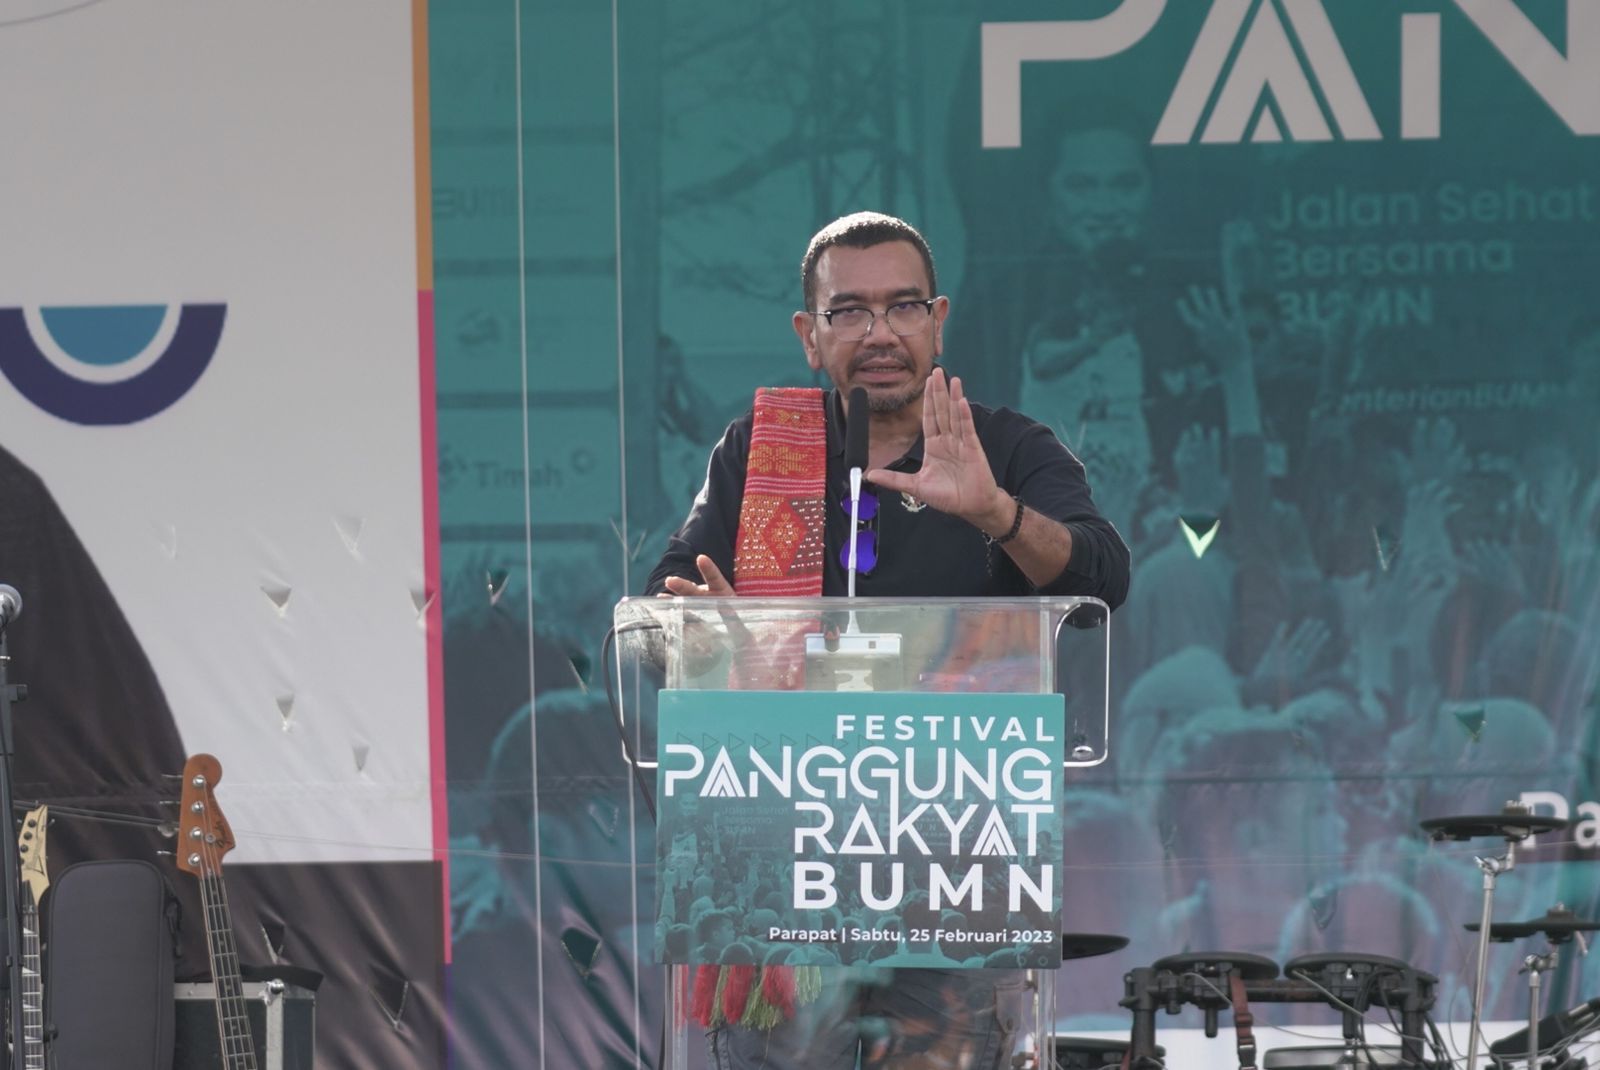 Erick Thohir Berbagi Kebahagiaan Bersama Masyarakat Danau Toba di Acara Festival Panggung Rakyat BUMN